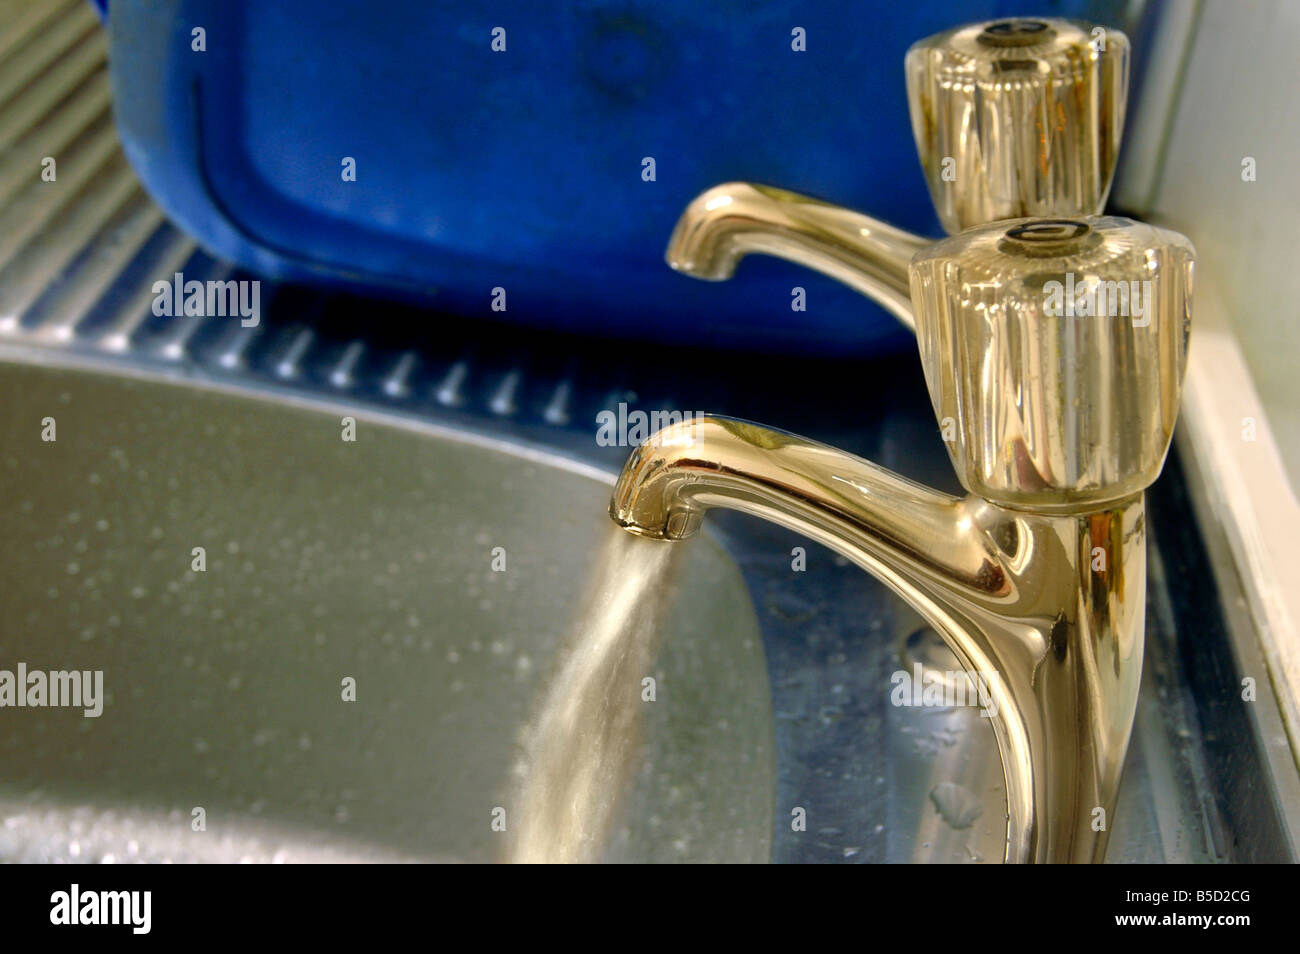 Esecuzione di acqua da un rubinetto al lavello. Foto Stock